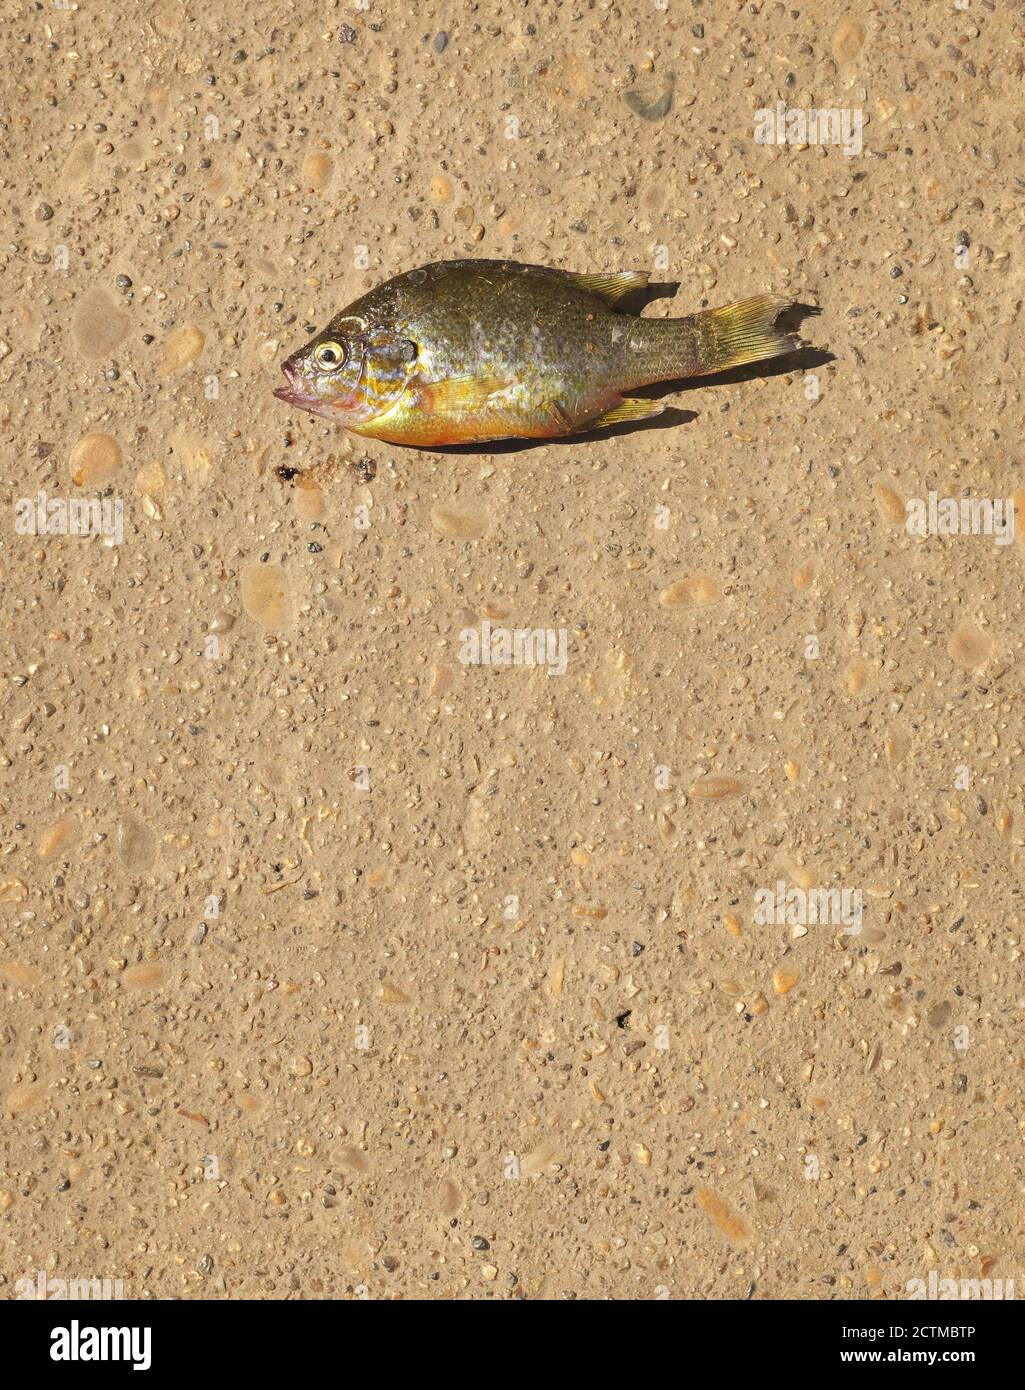 Toter Fisch auf dem Boden gefunden Stockfoto